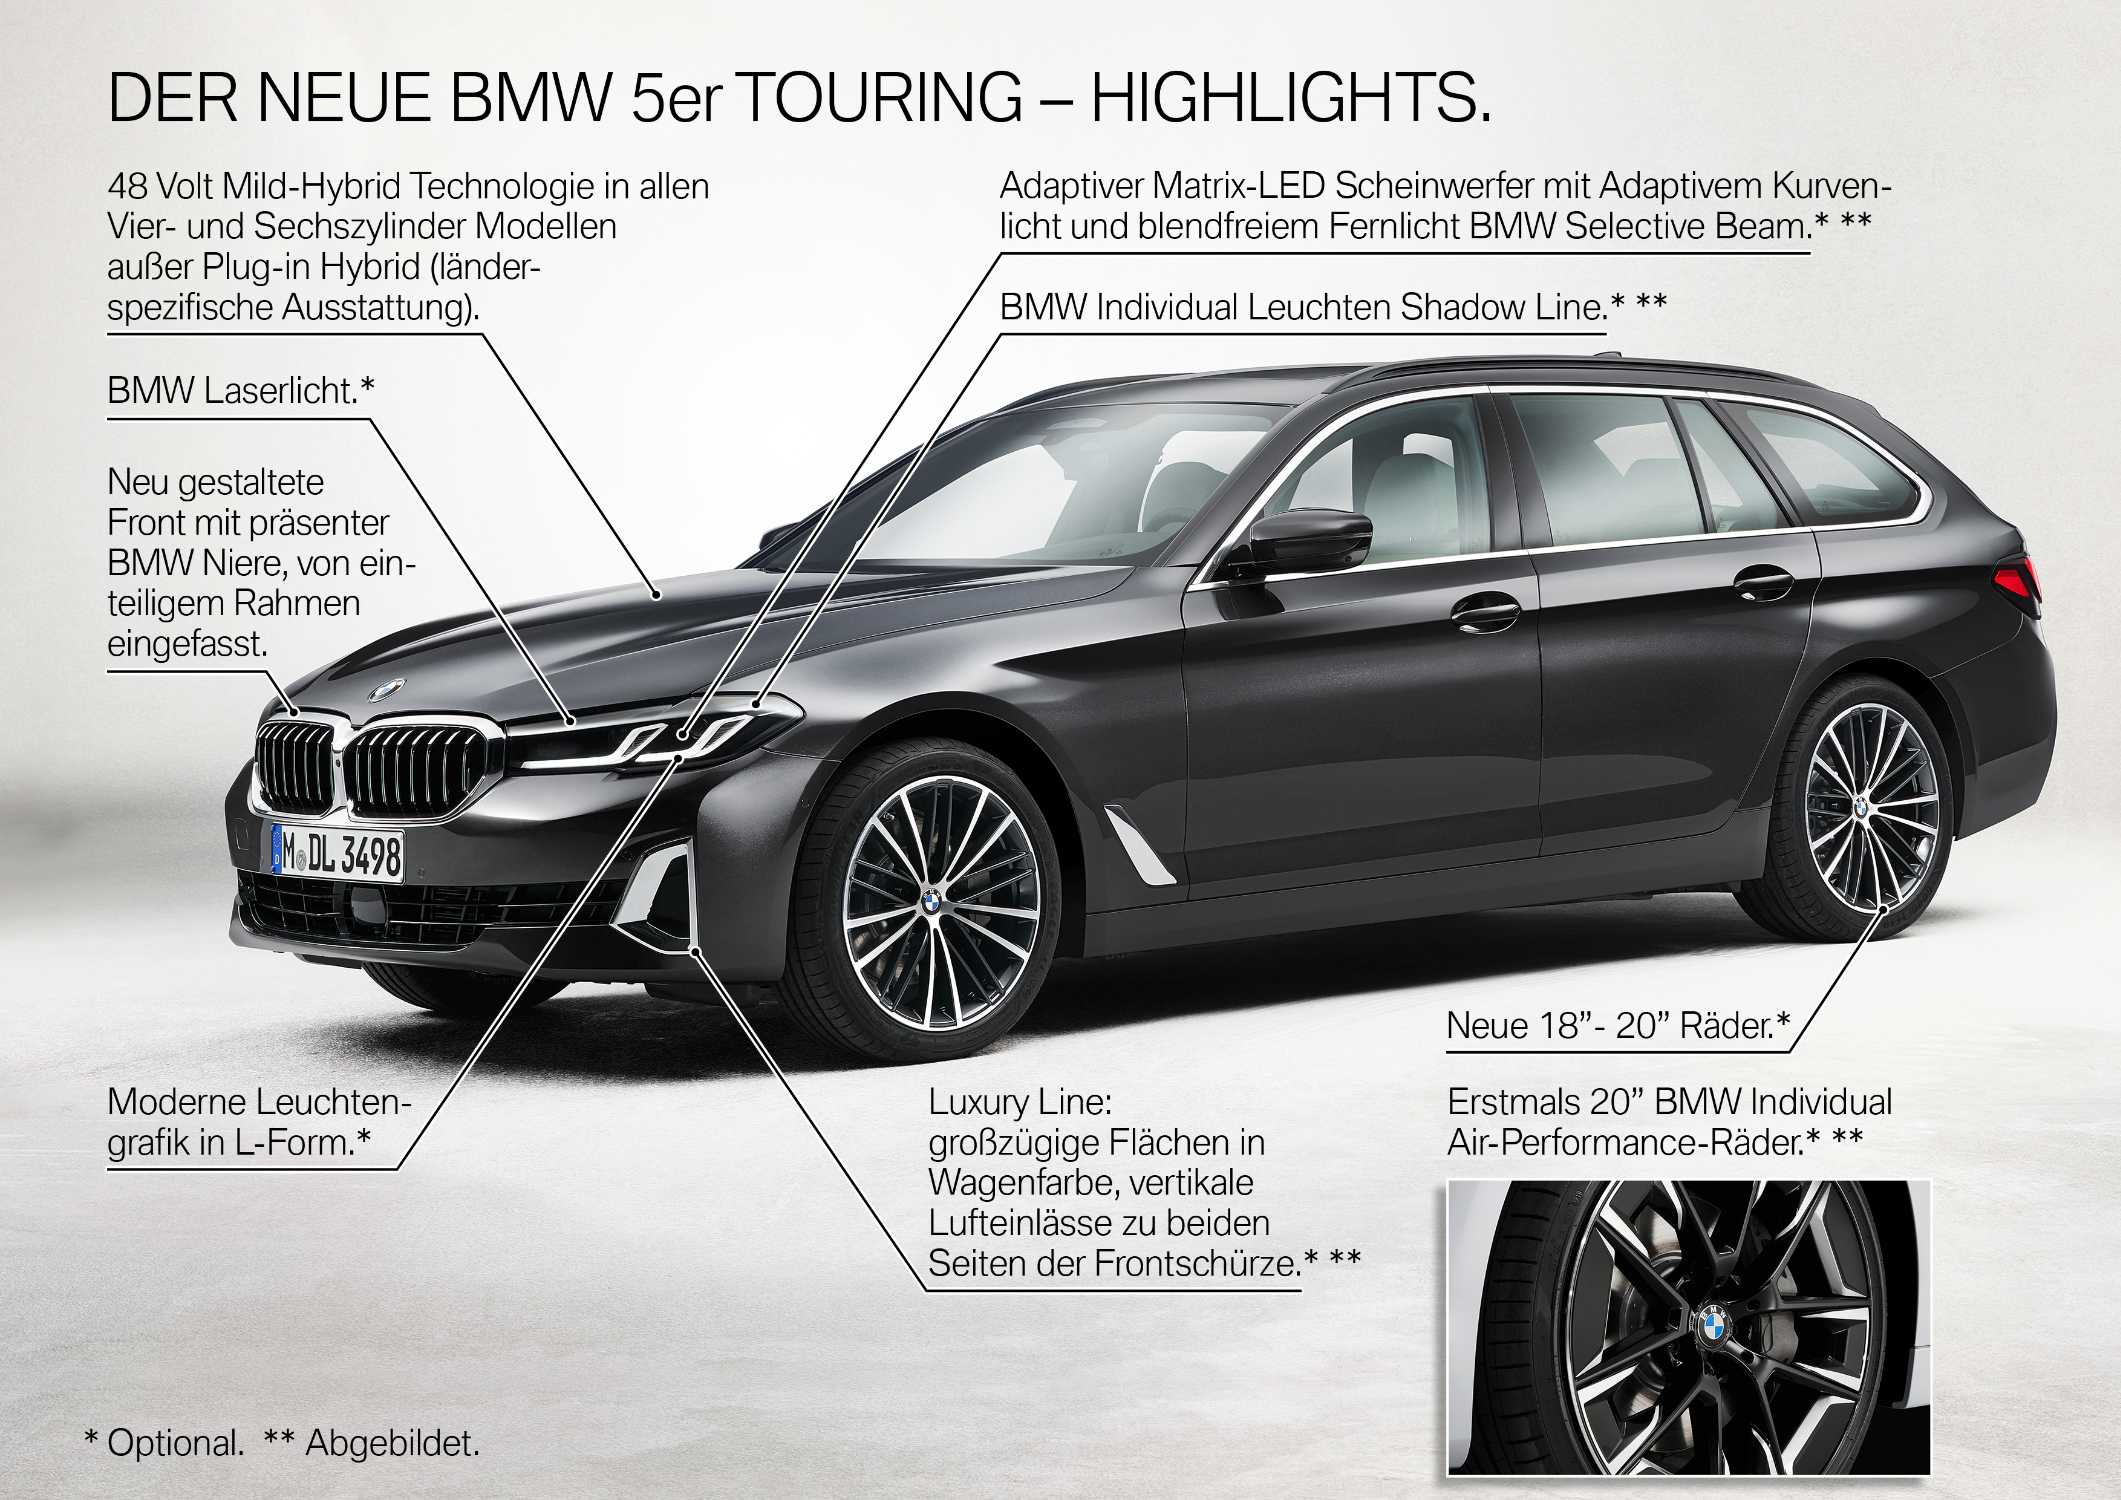 Der neue BMW 5er Touring - Highlights (05/2020)